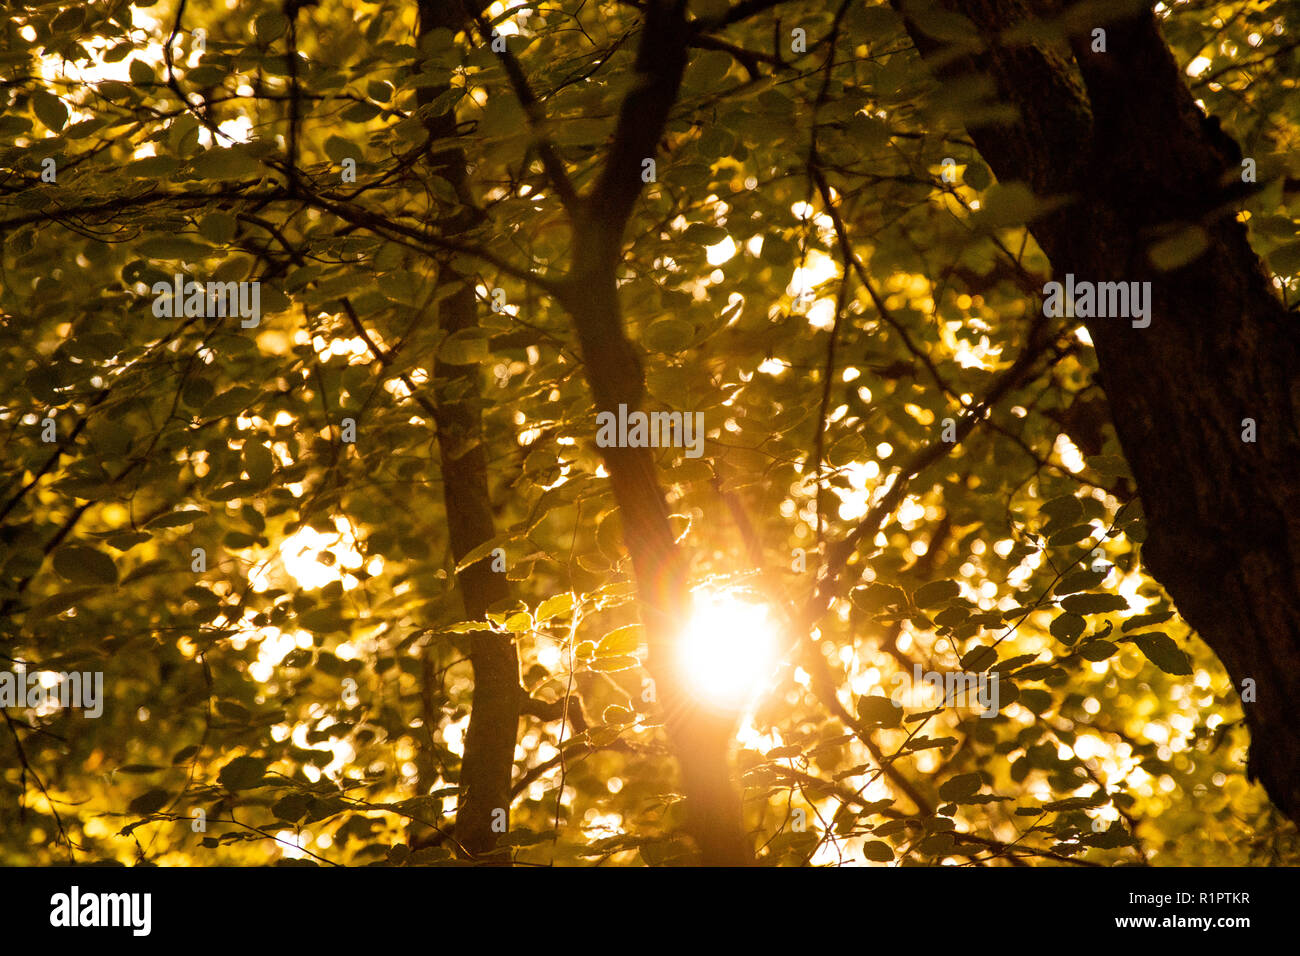 Los árboles en verano, hojas de cerca con los brillos de la lente Foto de stock